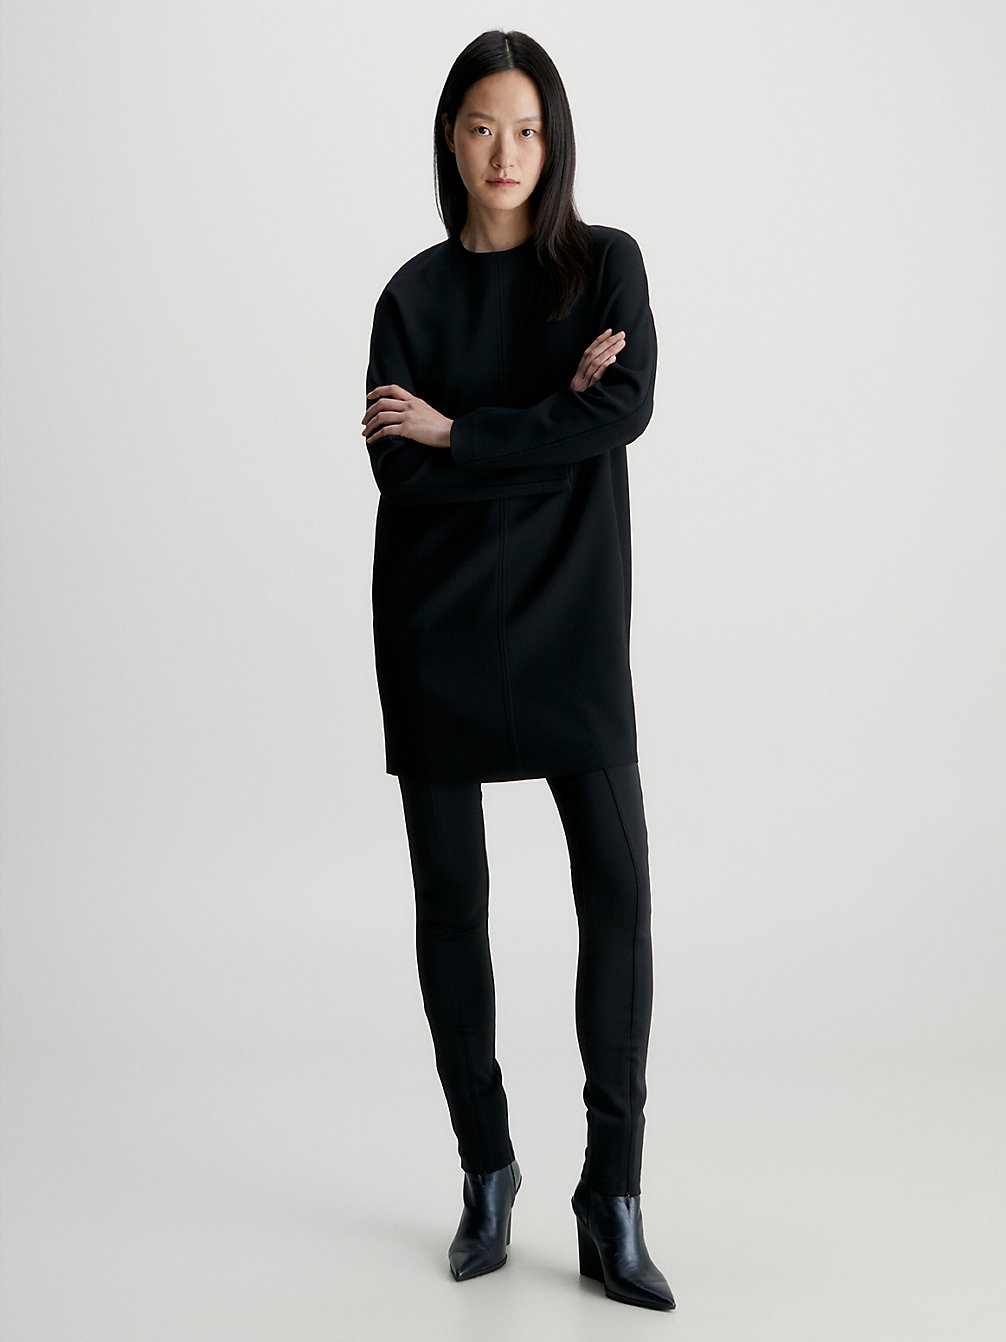 CK BLACK Relaxed Shift Dress undefined women Calvin Klein